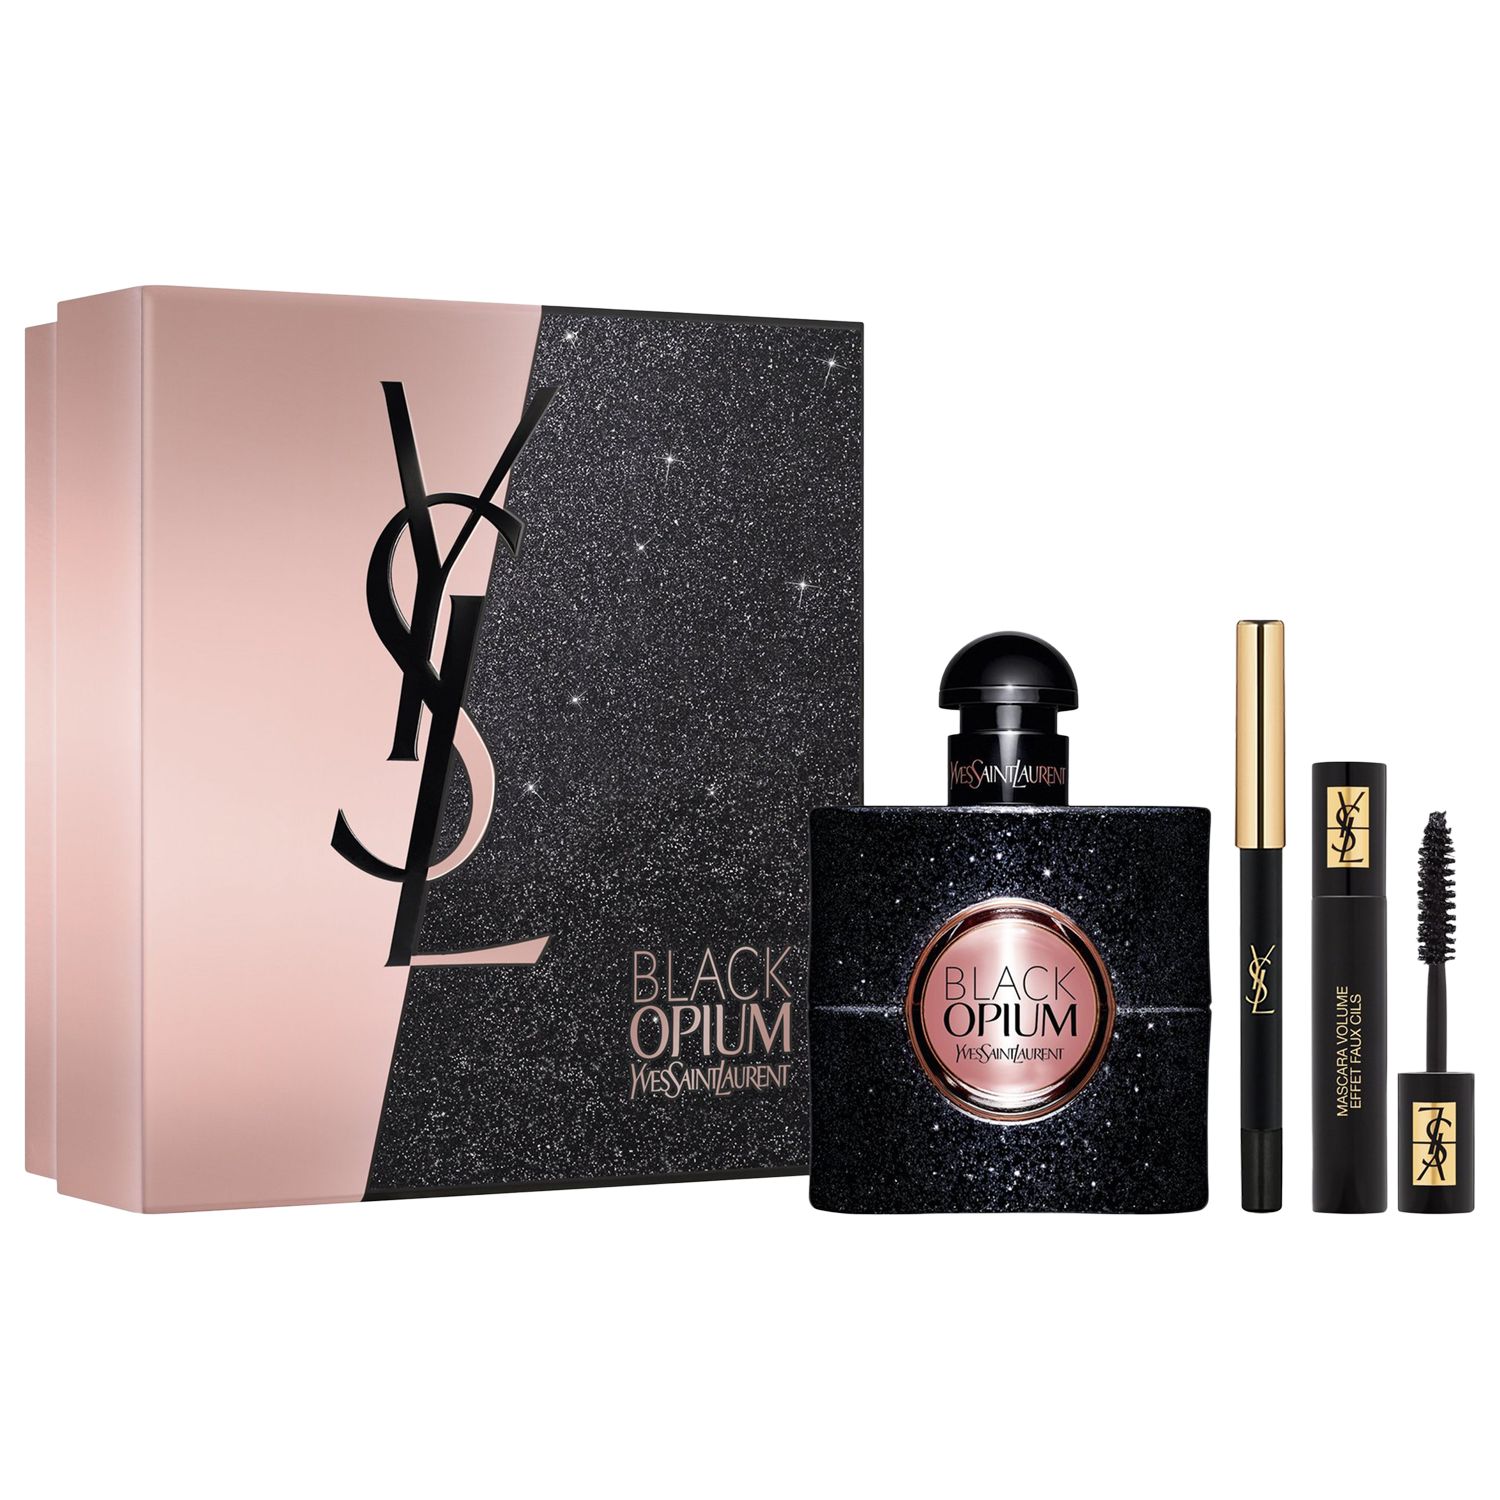 Yves Saint Laurent Black Opium Fragrance Gift Set